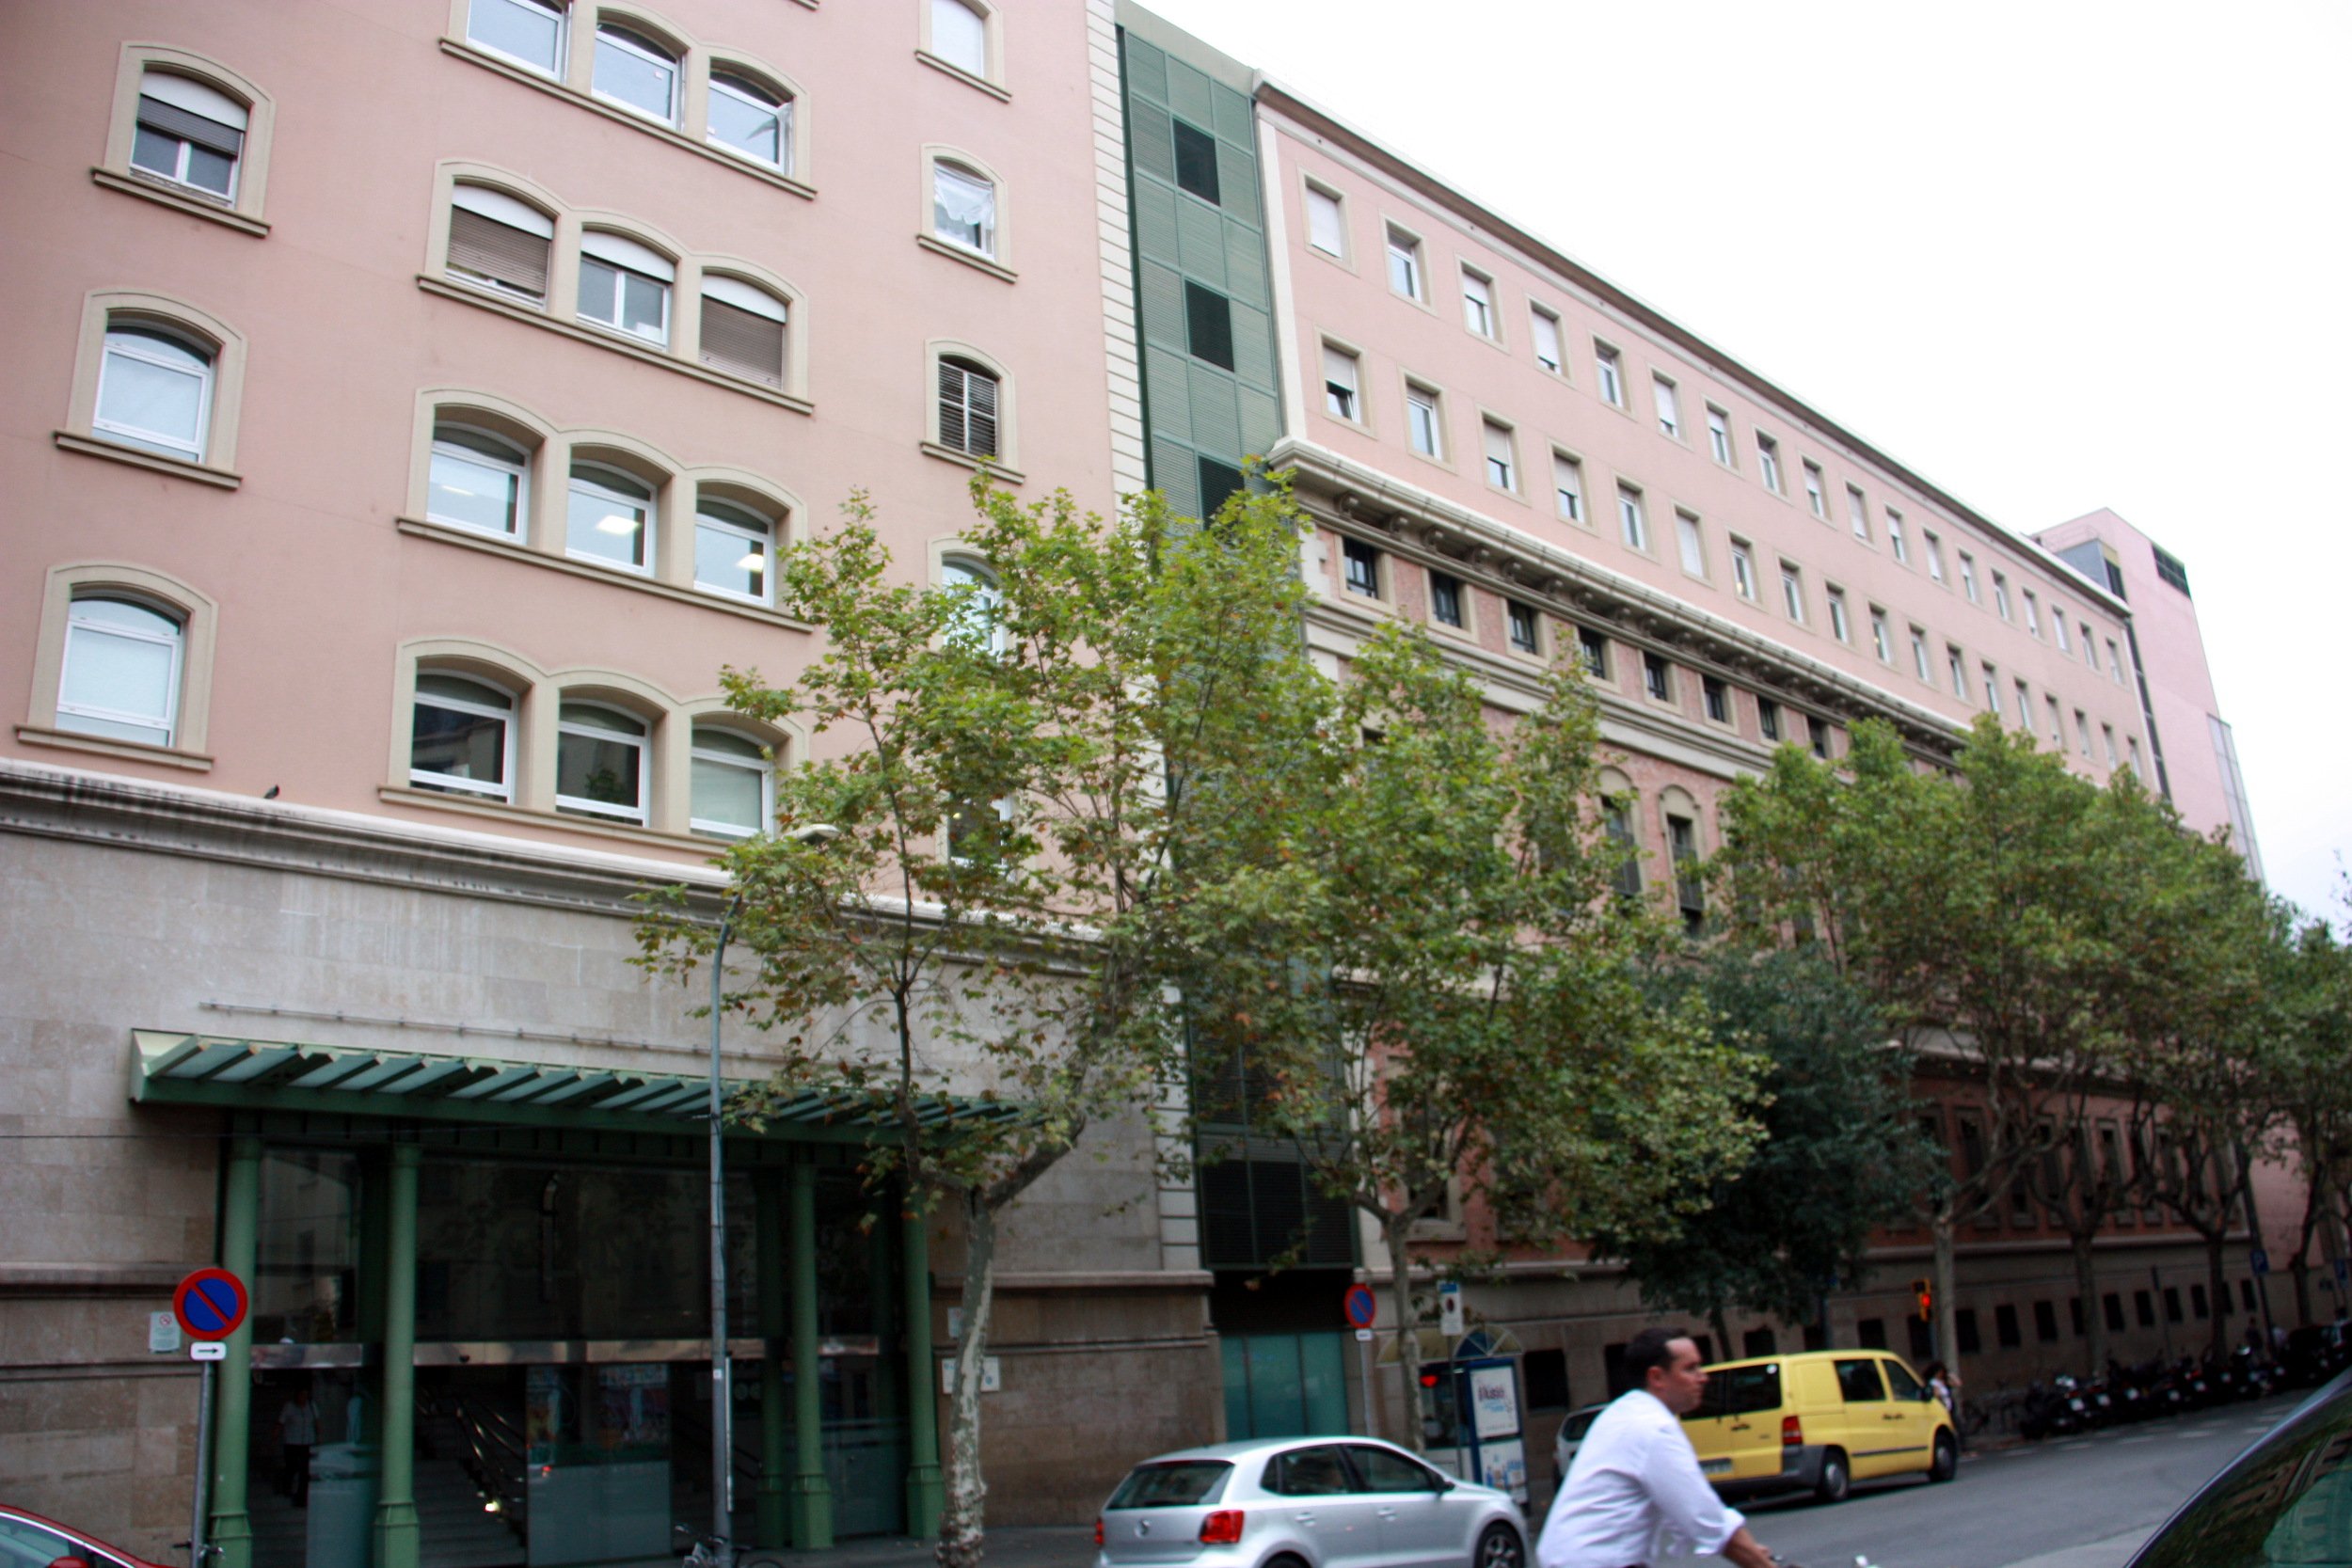 Catorze hospitals catalans reconeguts entre els 40 millors d'Espanya